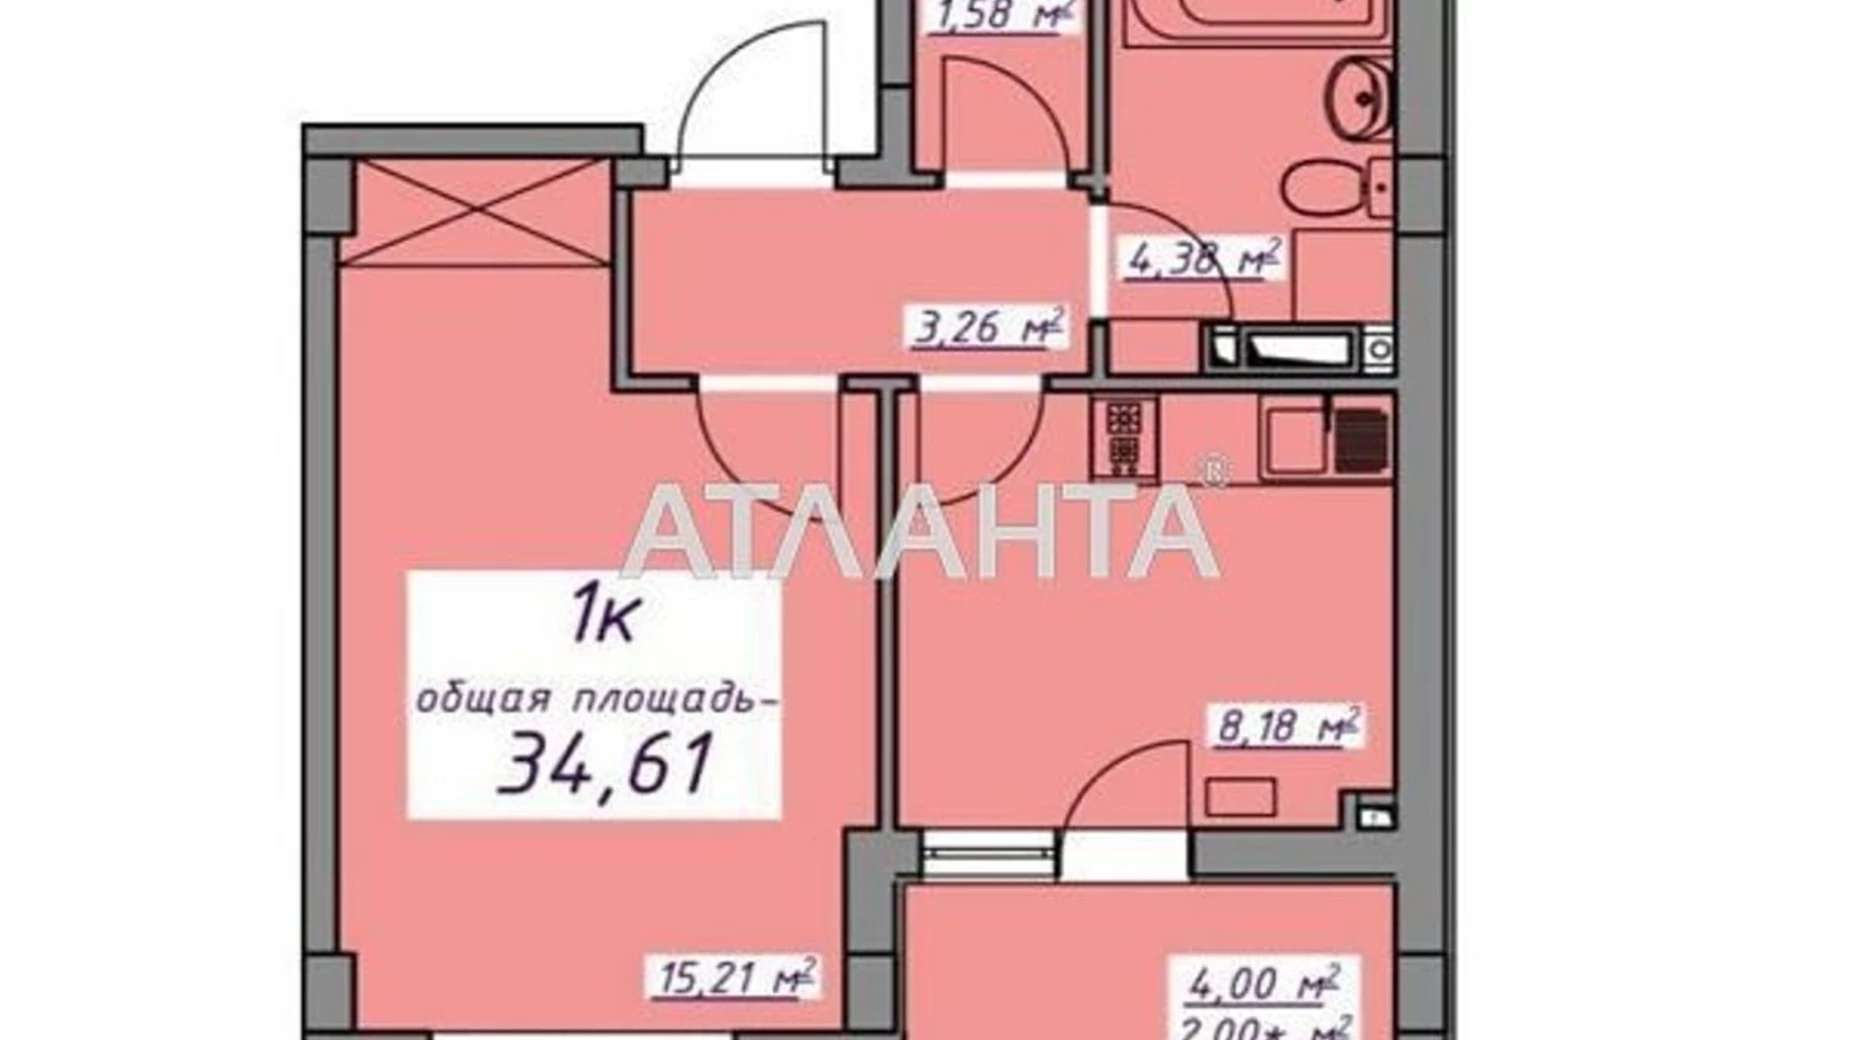 Продается 1-комнатная квартира 34.61 кв. м в Авангарде, ул. Проездная